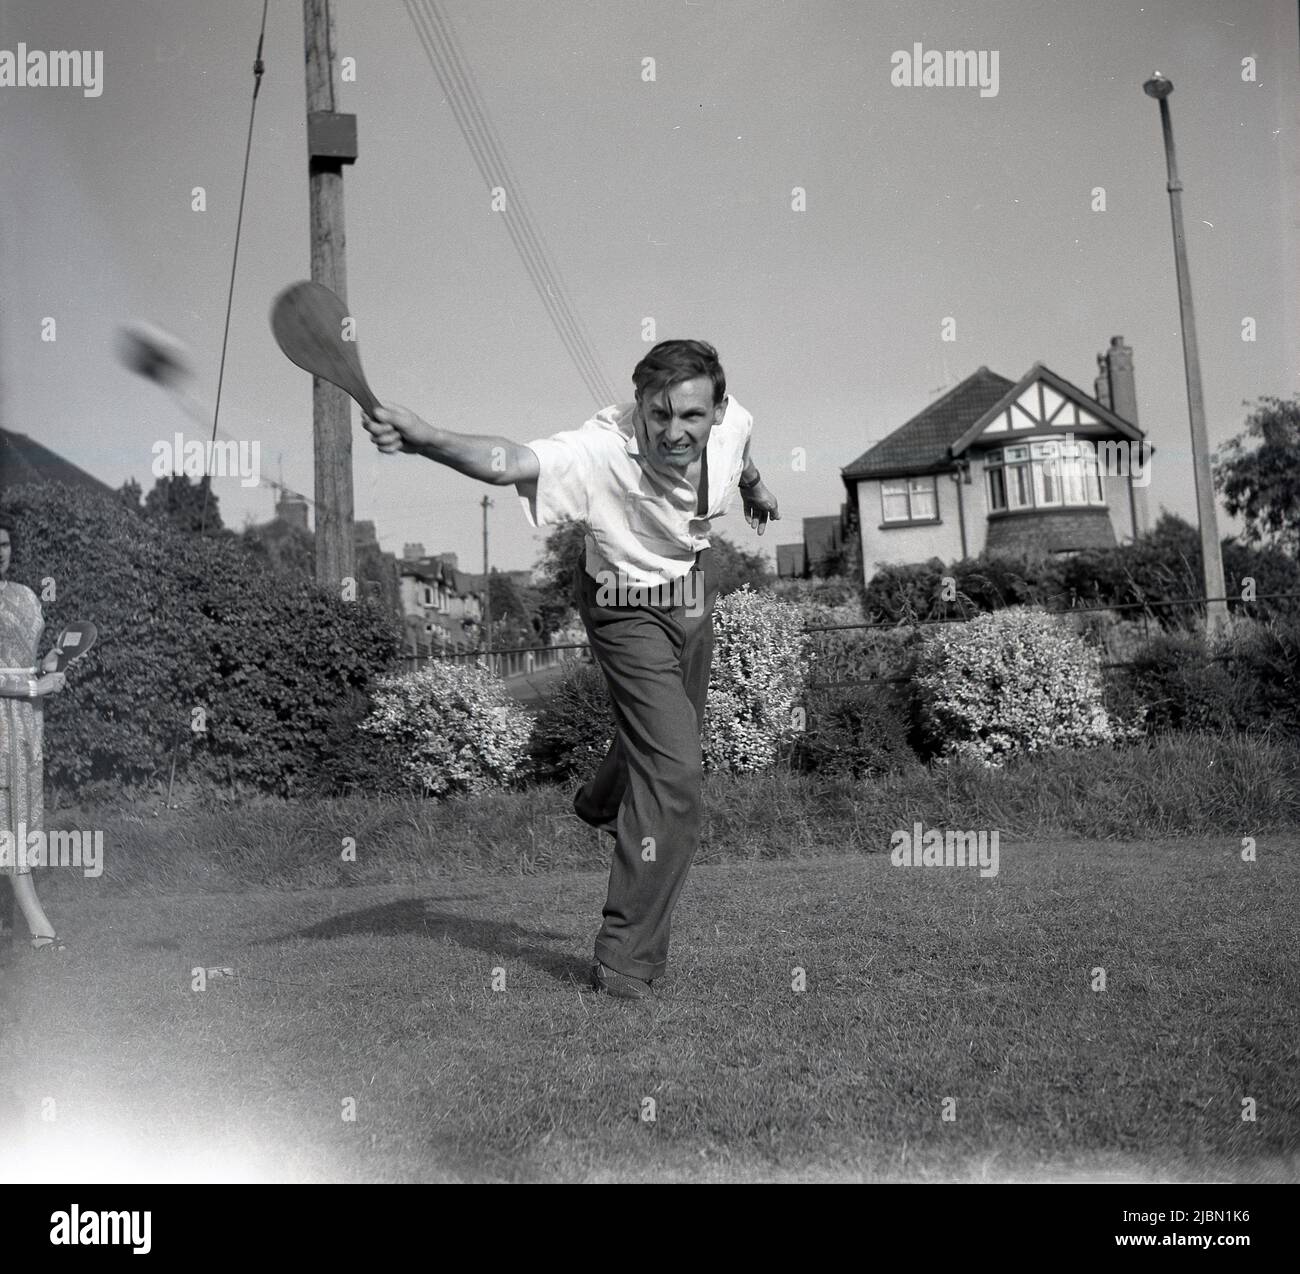 1950s. Historisch, ein Mann mit einer Holzschläger oder Paddel auf einem Rasen in einem Garten, spielt ein Swing-Ball-Spiel, England, Großbritannien. Stockfoto